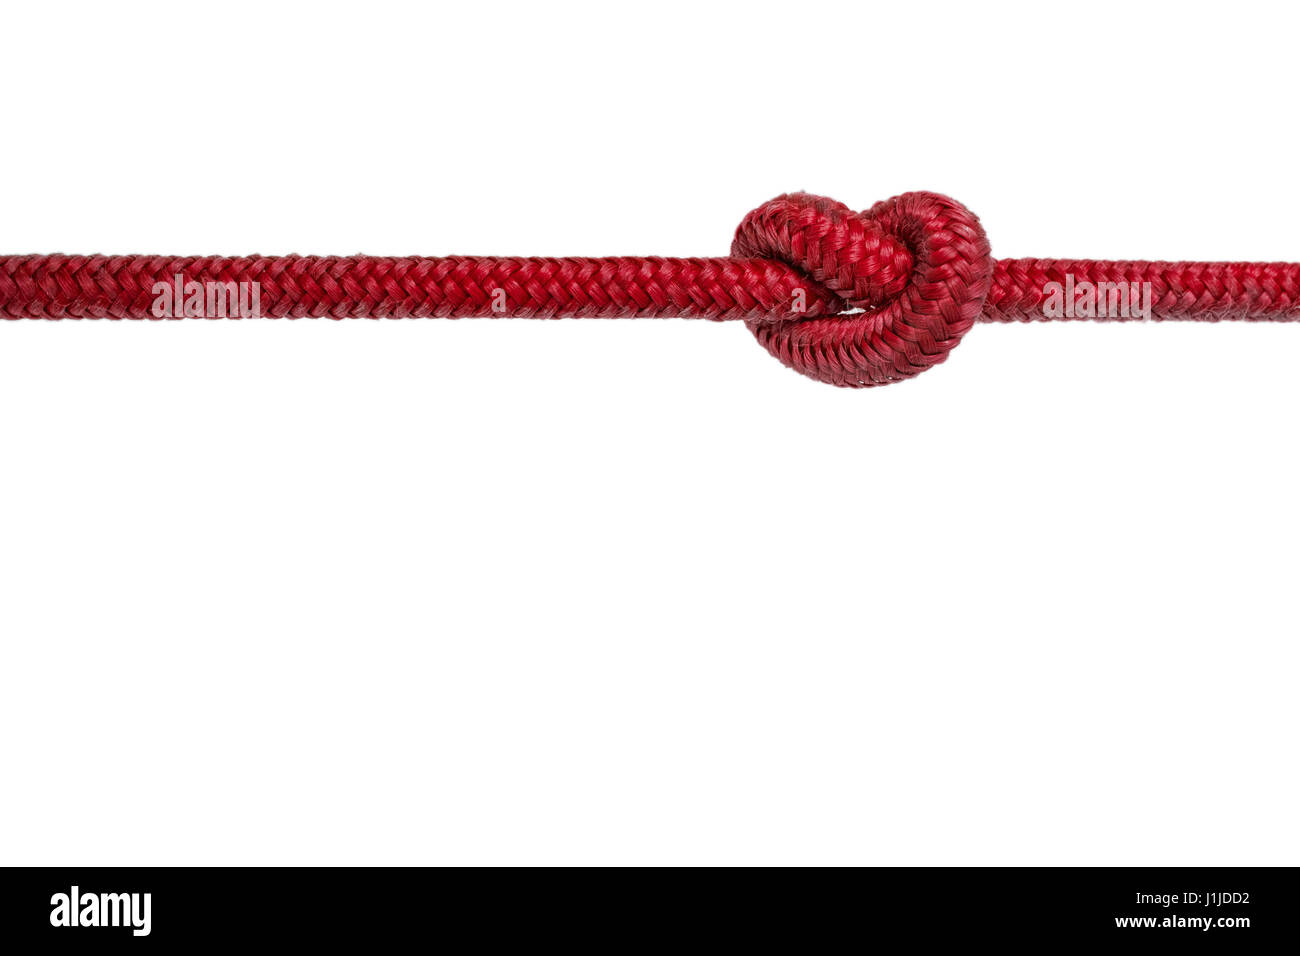 Corde rouge avec noeud - corde nouée sur fond blanc Banque D'Images